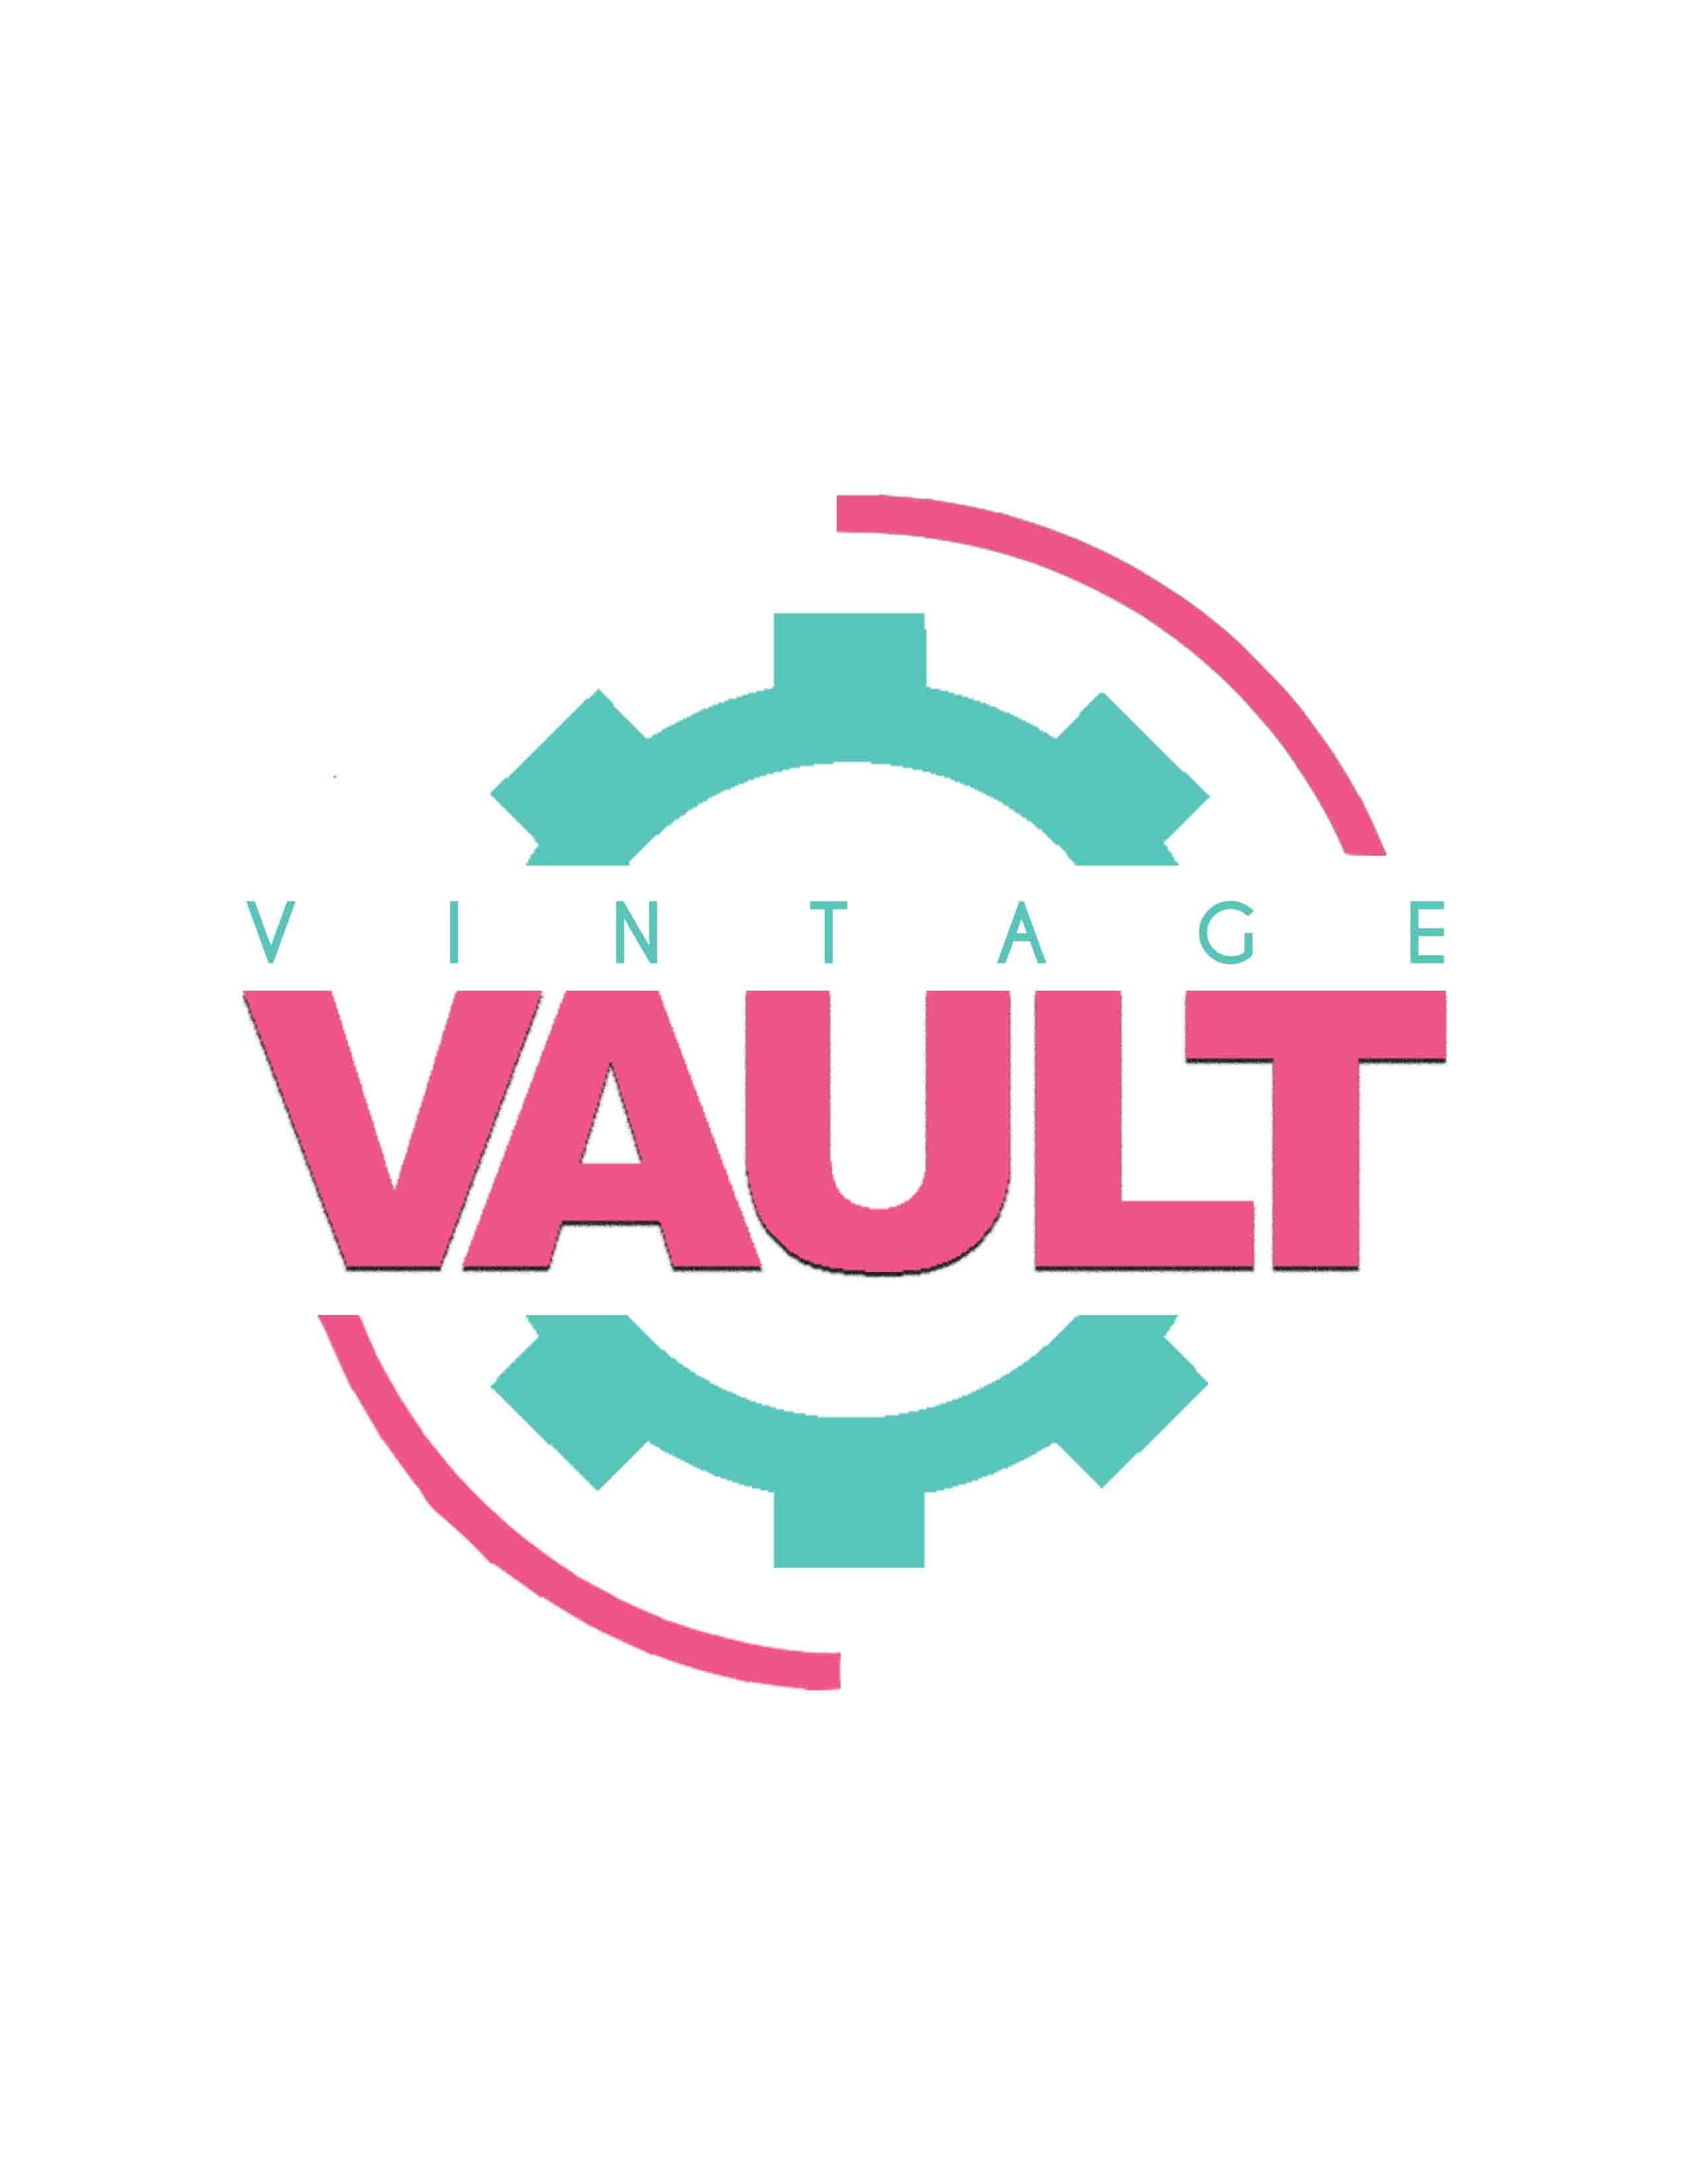 The Vintage Vault